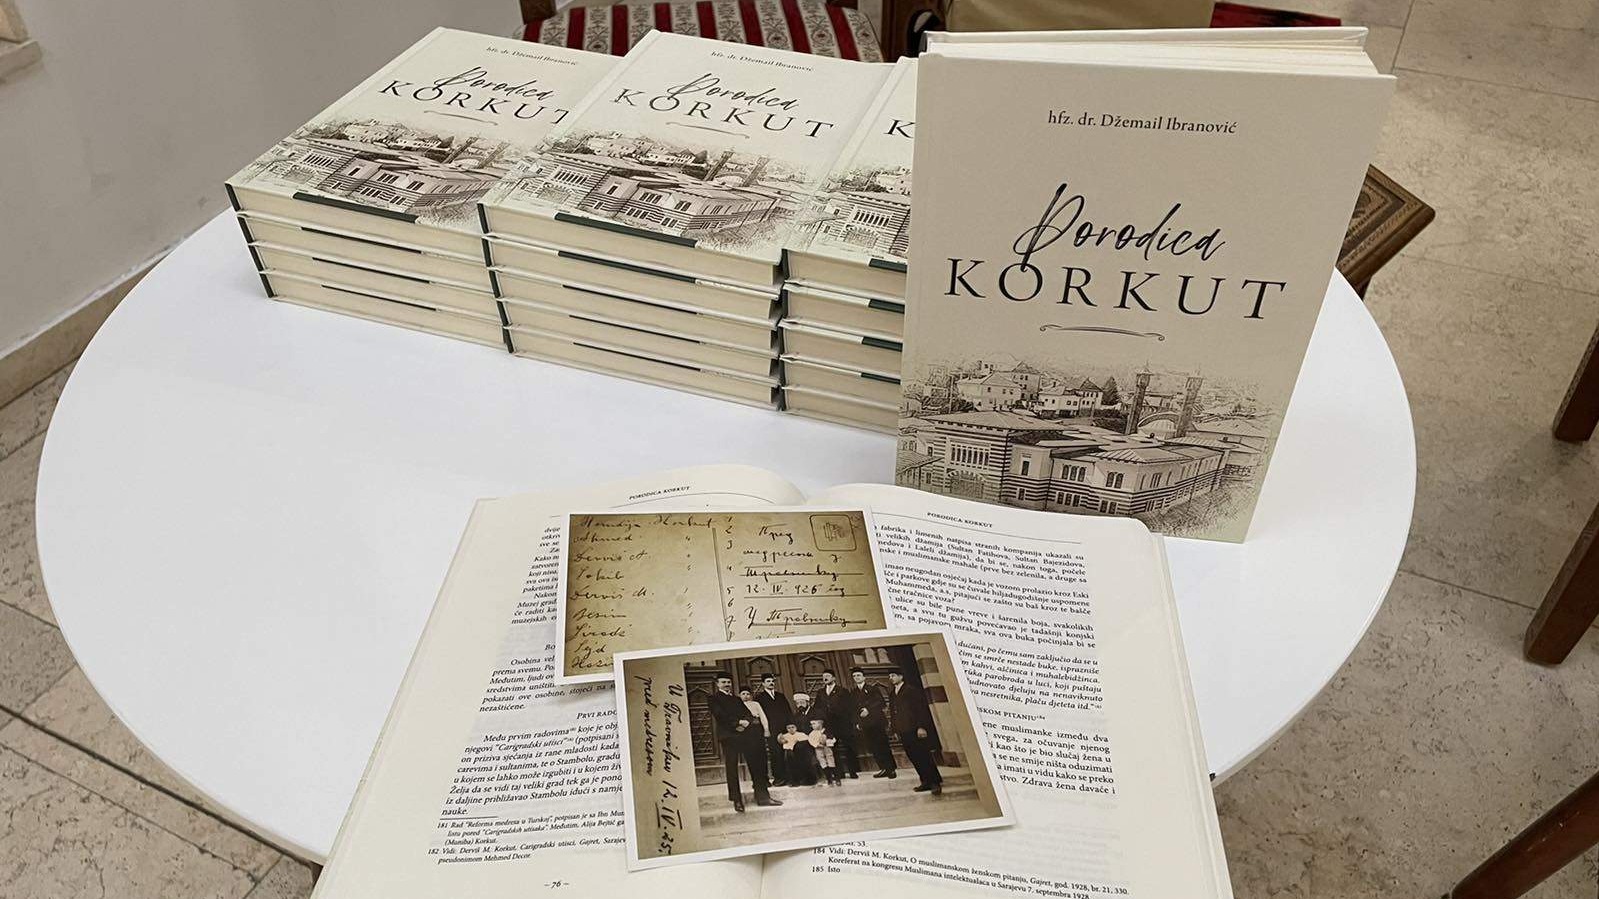 Travnik: Promovirana knjiga "Porodica Korkut", autora hfz. dr. Džemaila Ibranovića 